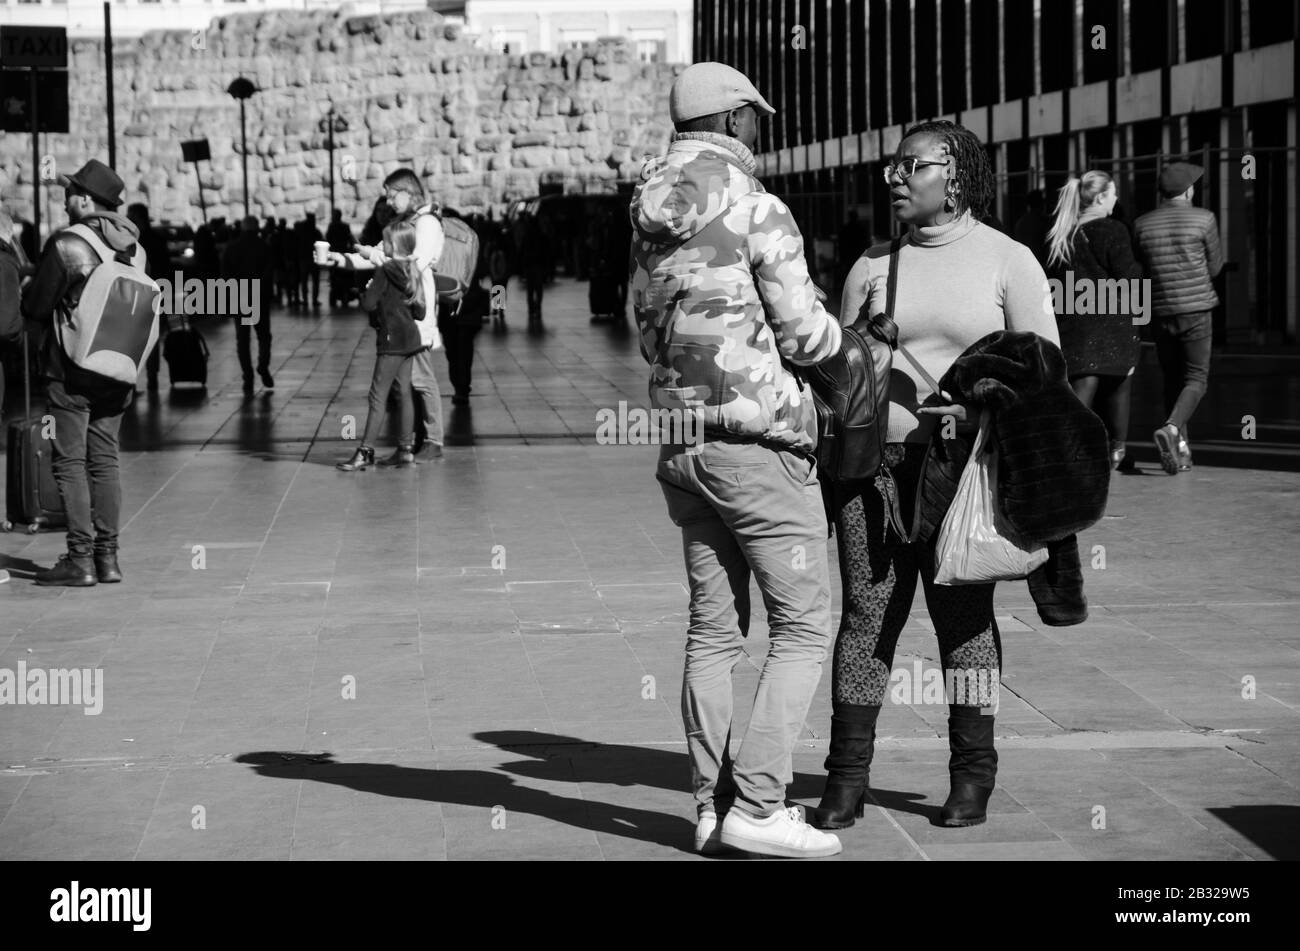 Roma, Italia. 23 Febbraio 2020. Un uomo nero e una donna nera che parlano fuori dalla stazione ferroviaria. Immagine in bianco e nero Foto Stock